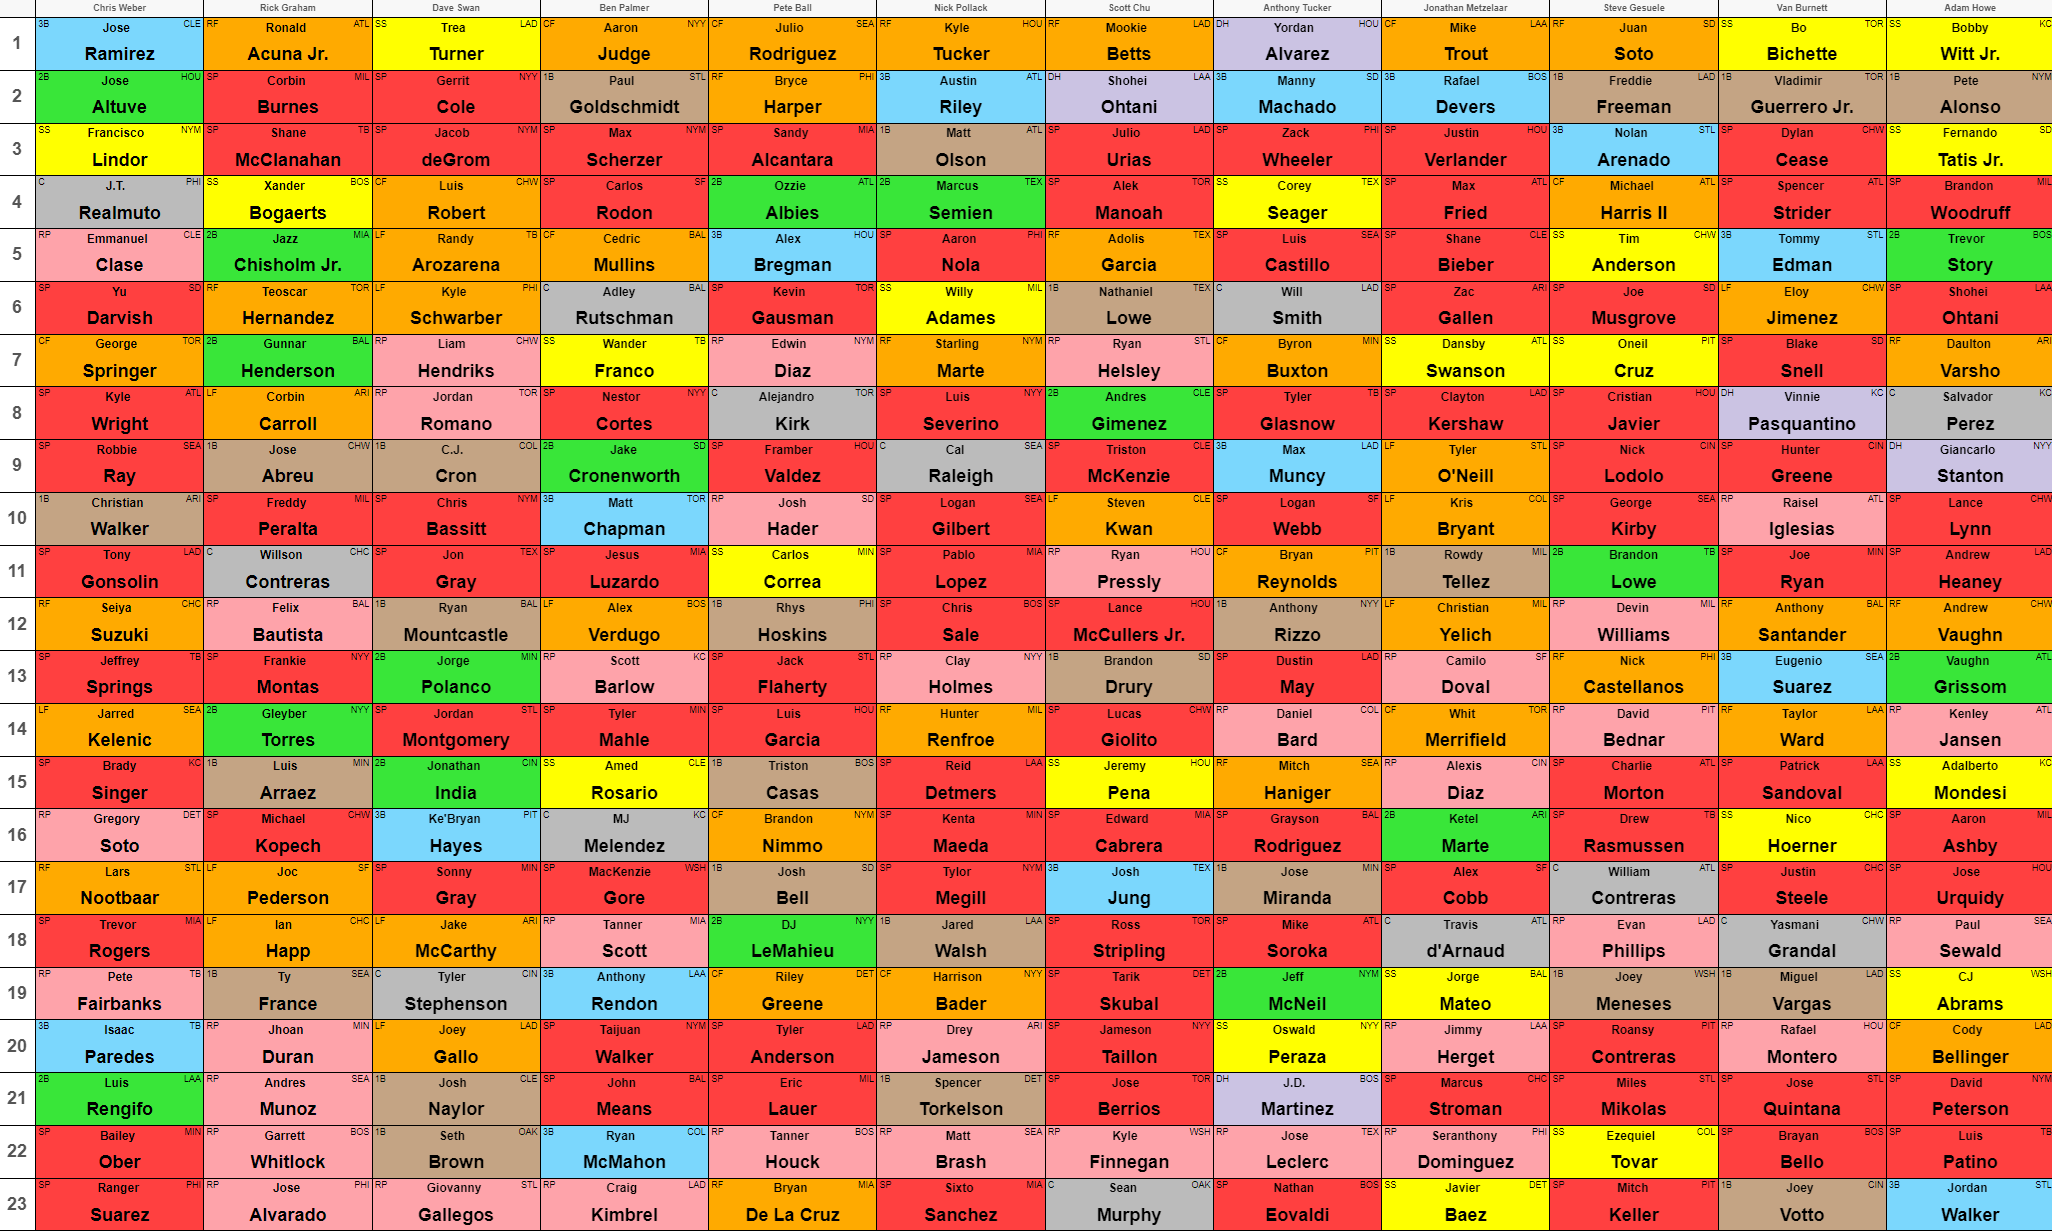 MLB Draft order 2023: Full list of picks for all 20 rounds